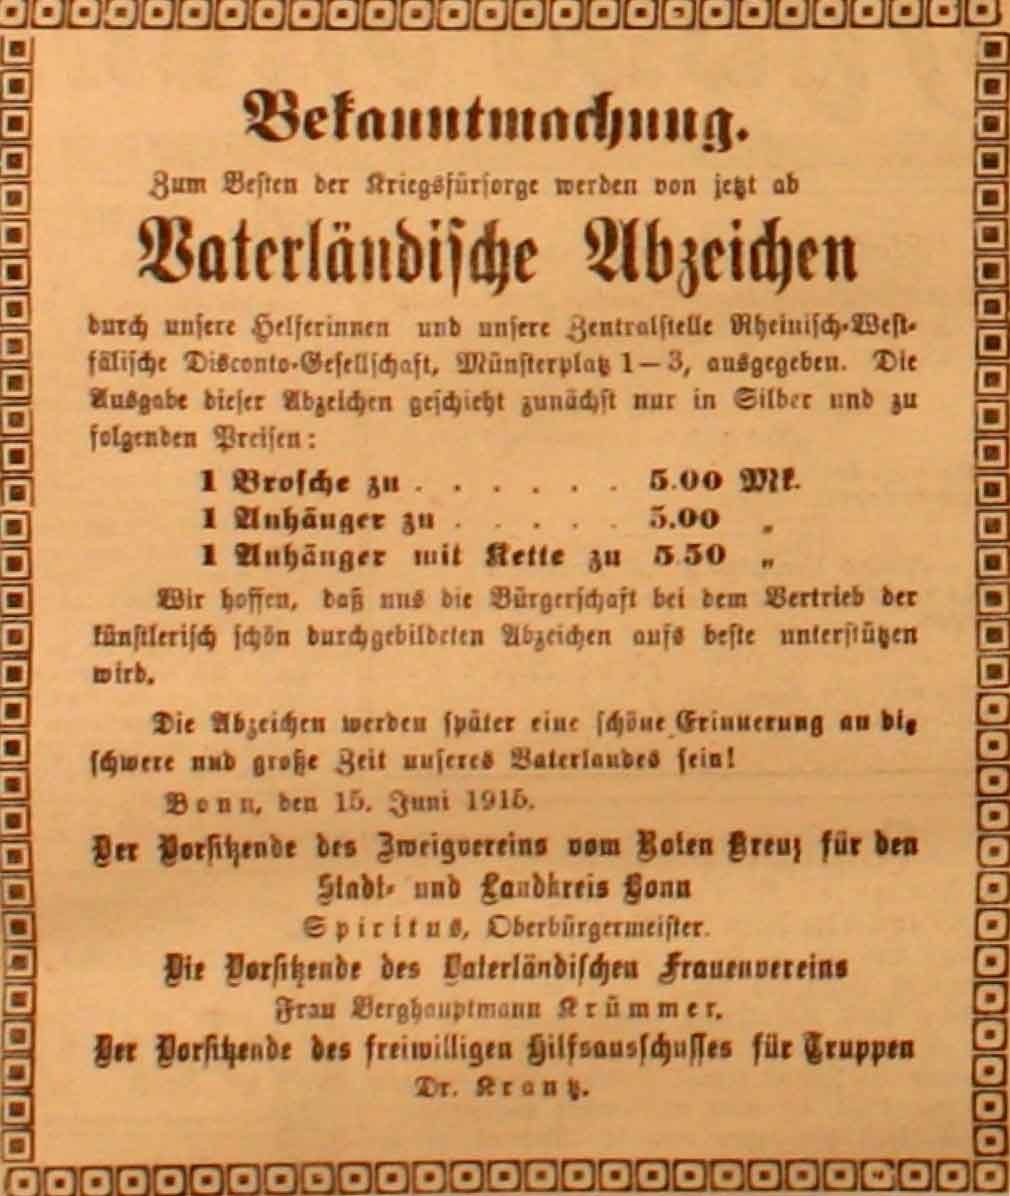 Anzeige in der Deutschen Reichs-Zeitung vom 16. Juni 1915